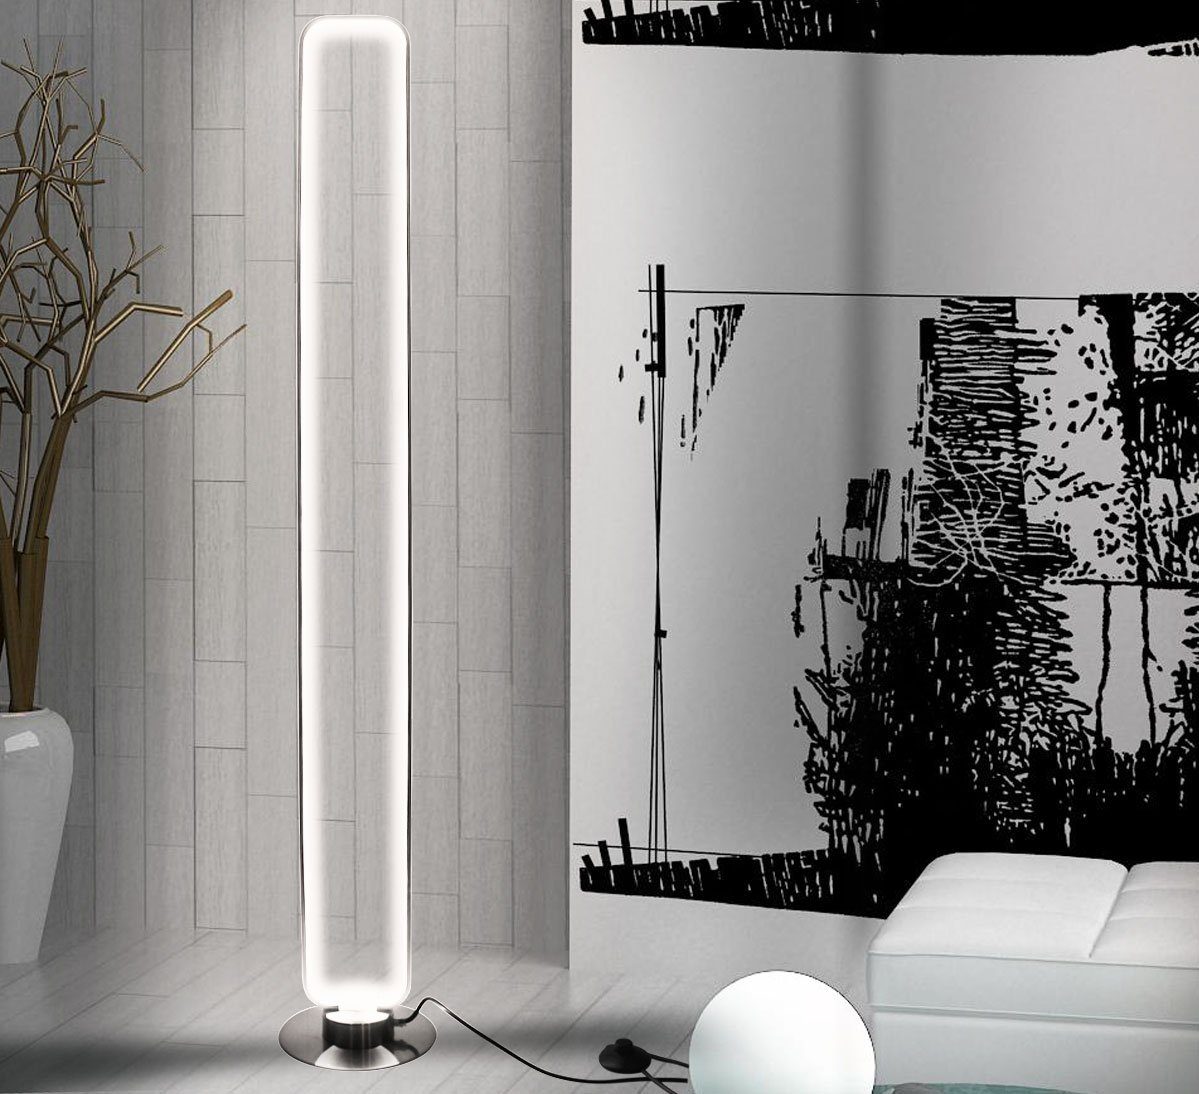 Lewima LED Stehlampe »Diffus« 140cm Standleuchte Groß, und LED Standlampe Stehleuchte Fernbedienung Warmweiß, 25W dimmbar, Bodenlampe mit Speicherfunktion, XXL